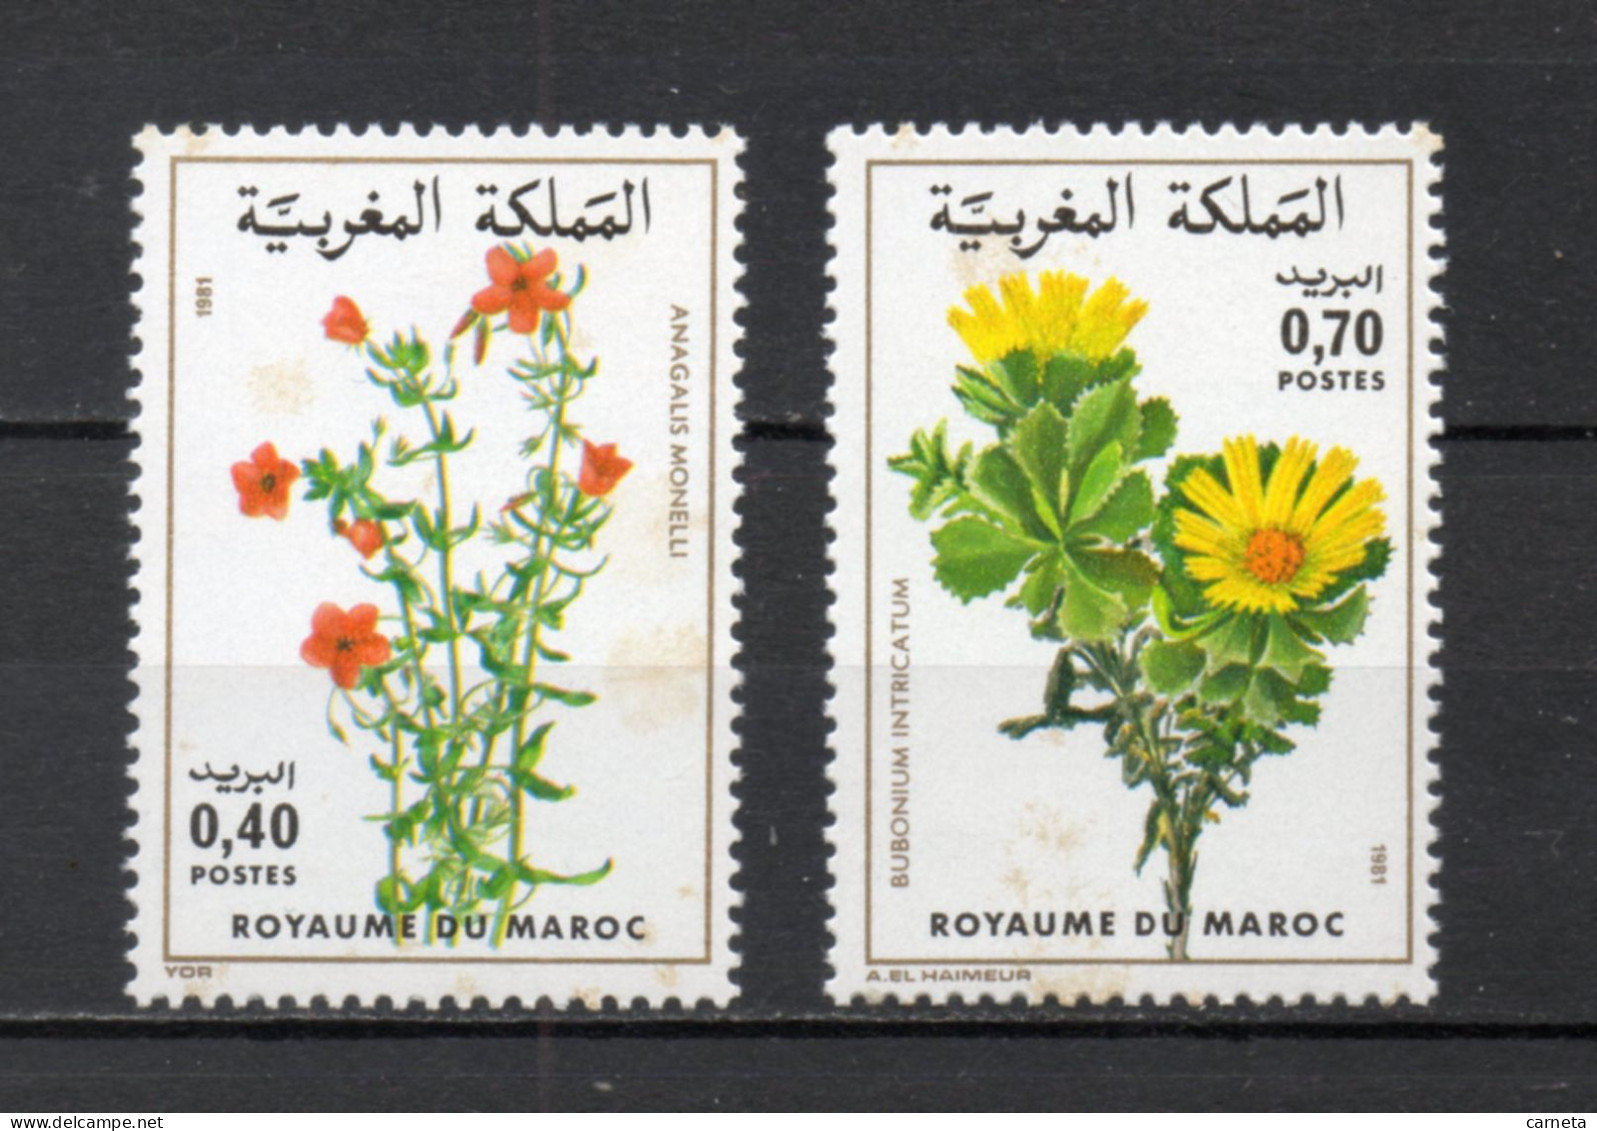 MAROC N°  880 + 881    NEUFS SANS CHARNIERE  COTE 3.50€    FLEUR FLORE VOIR DESCRIPTION - Marocco (1956-...)